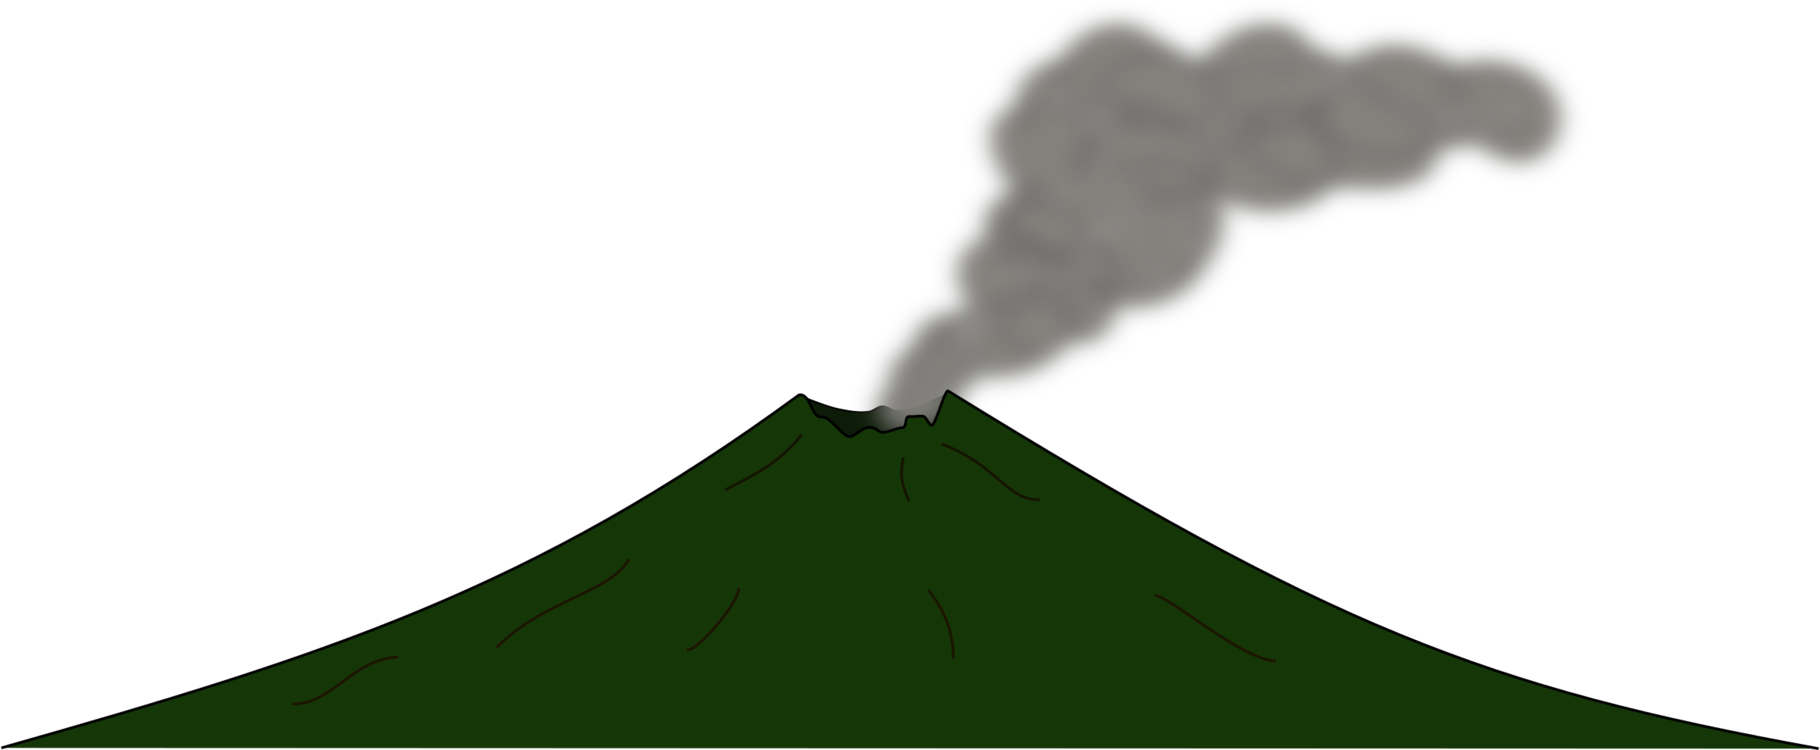 lava clipart